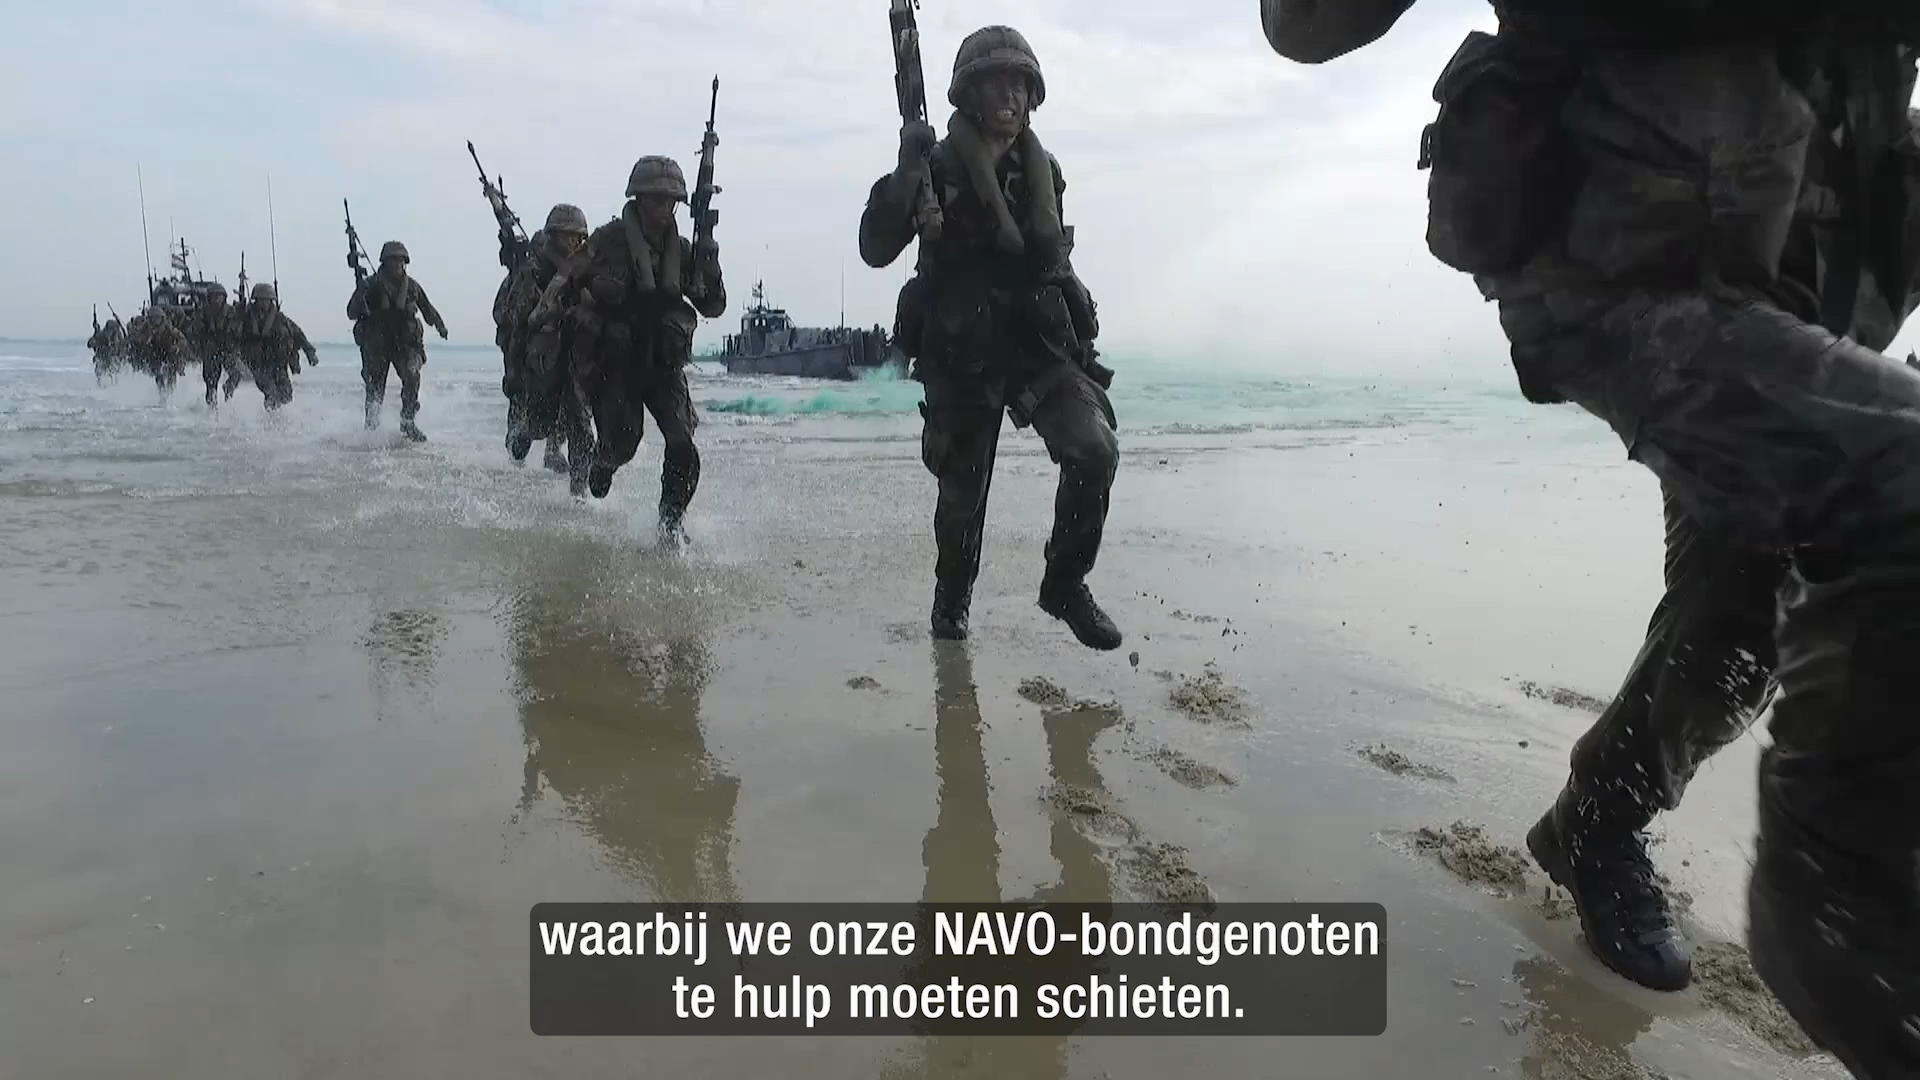 www.defensie.nl